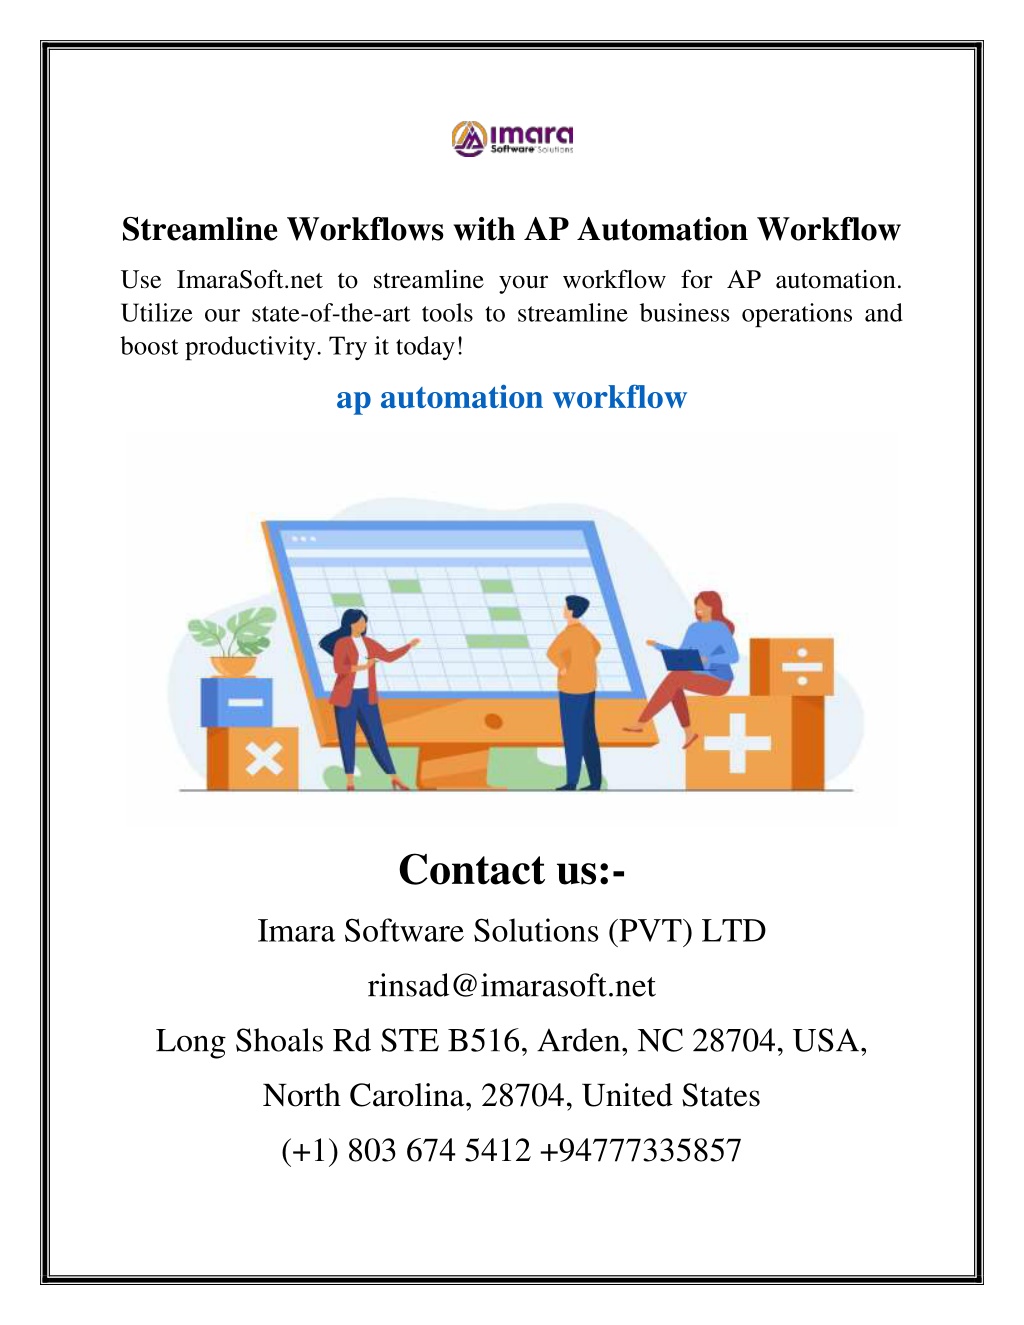 streamline workflows with ap automation workflow l.w